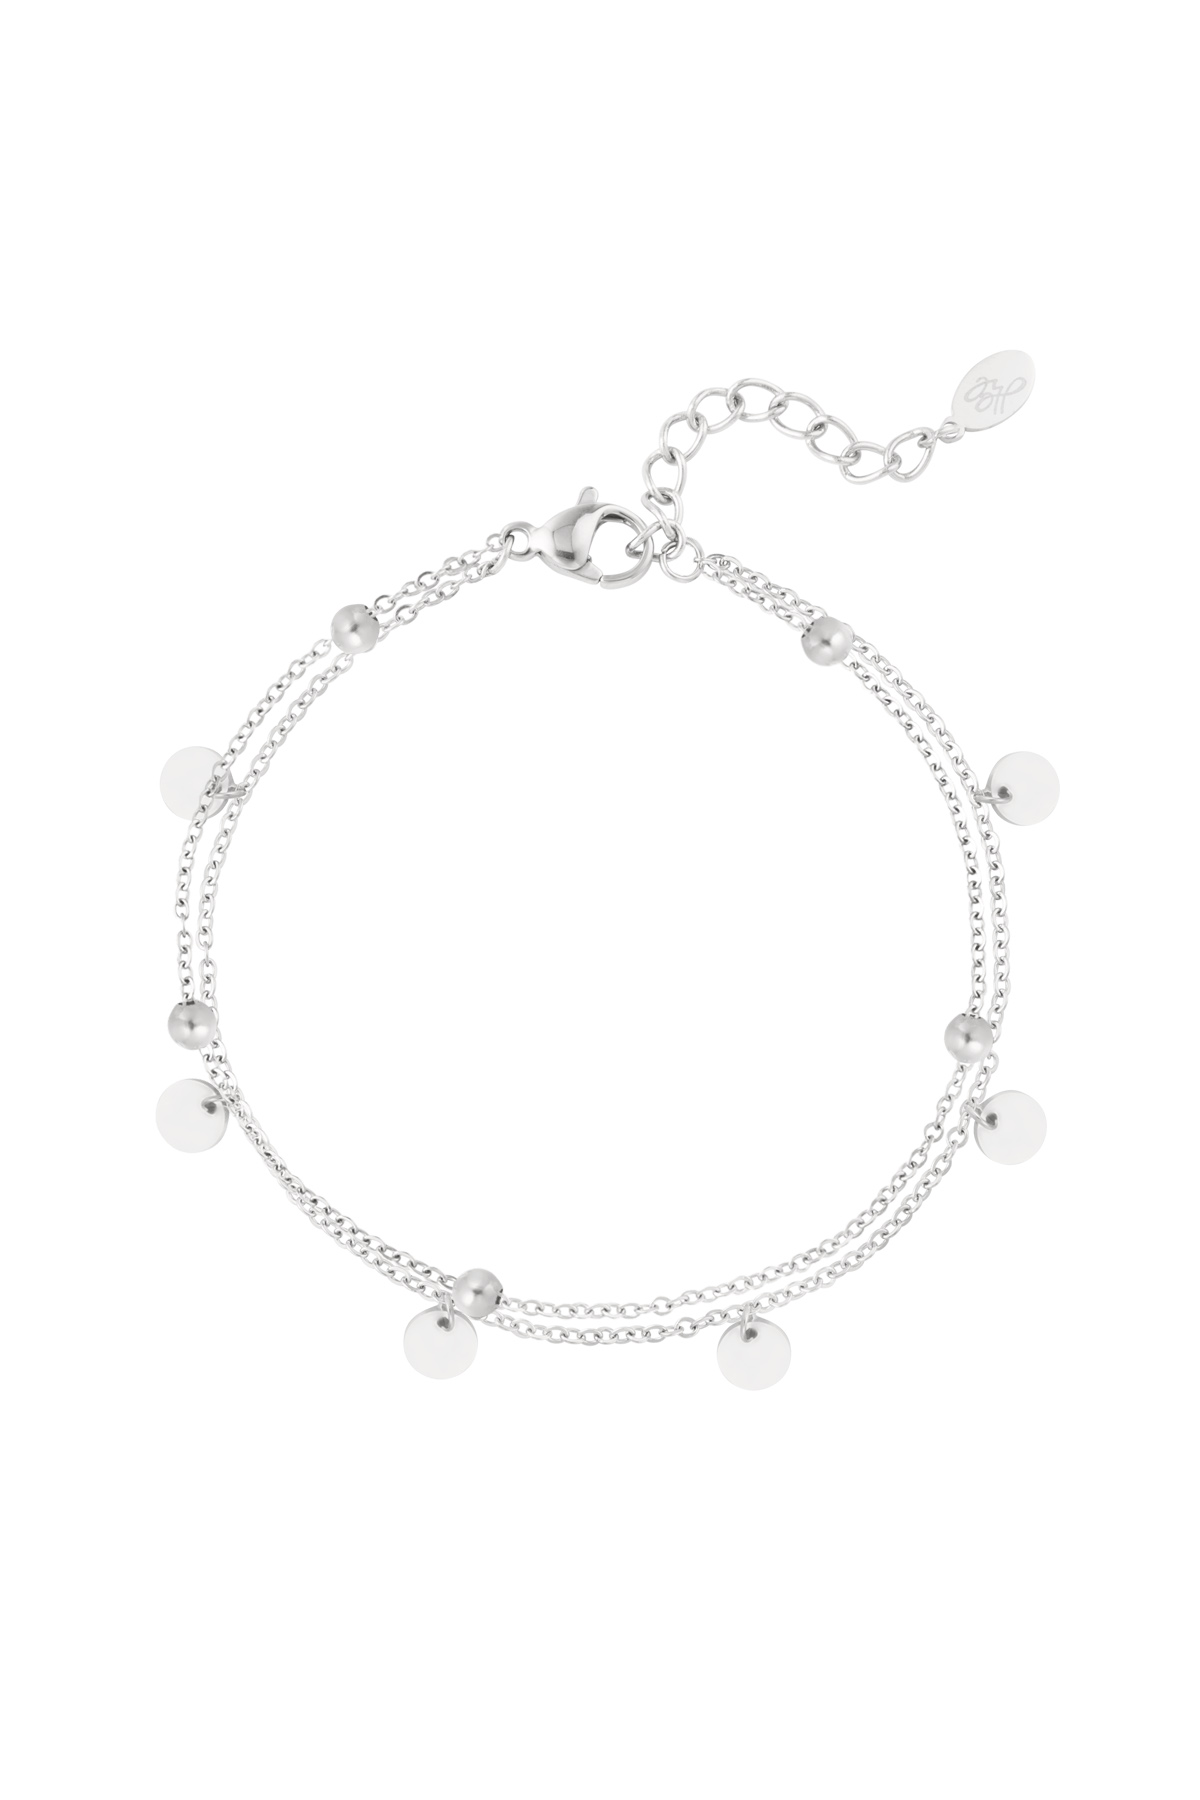 Double bracelet decoration - silver h5 